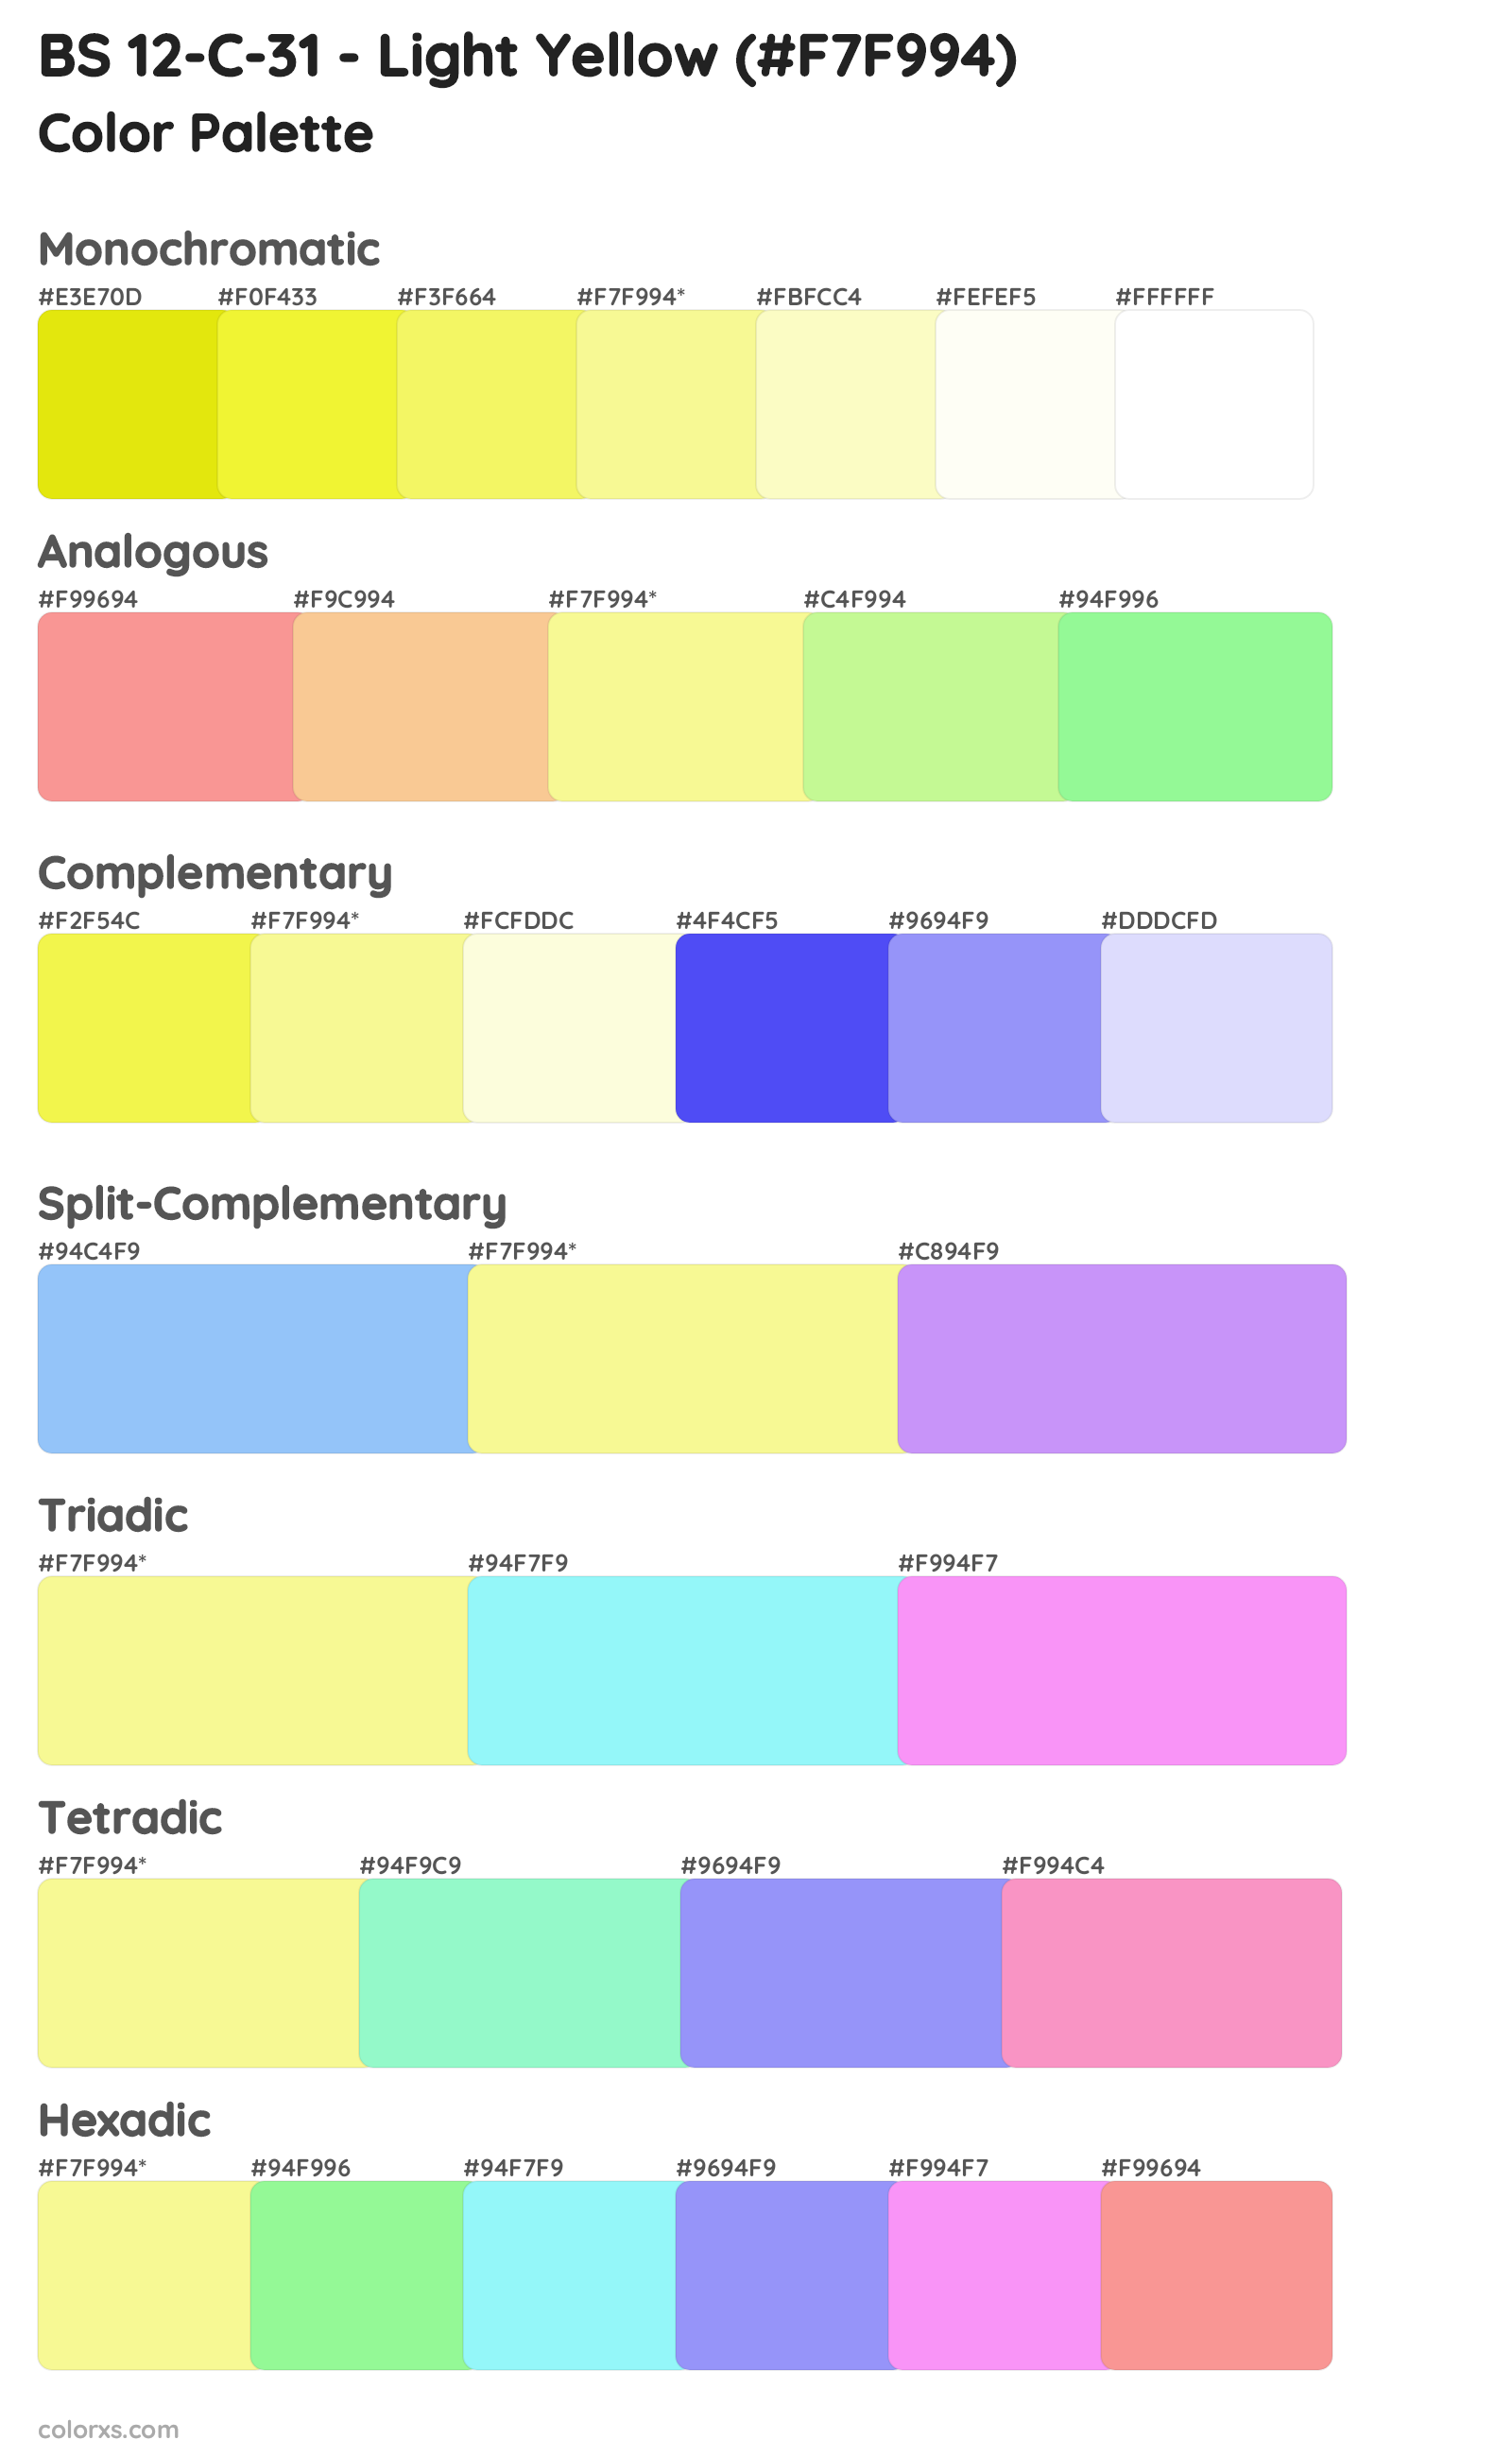 BS 12-C-31 - Light Yellow Color Scheme Palettes